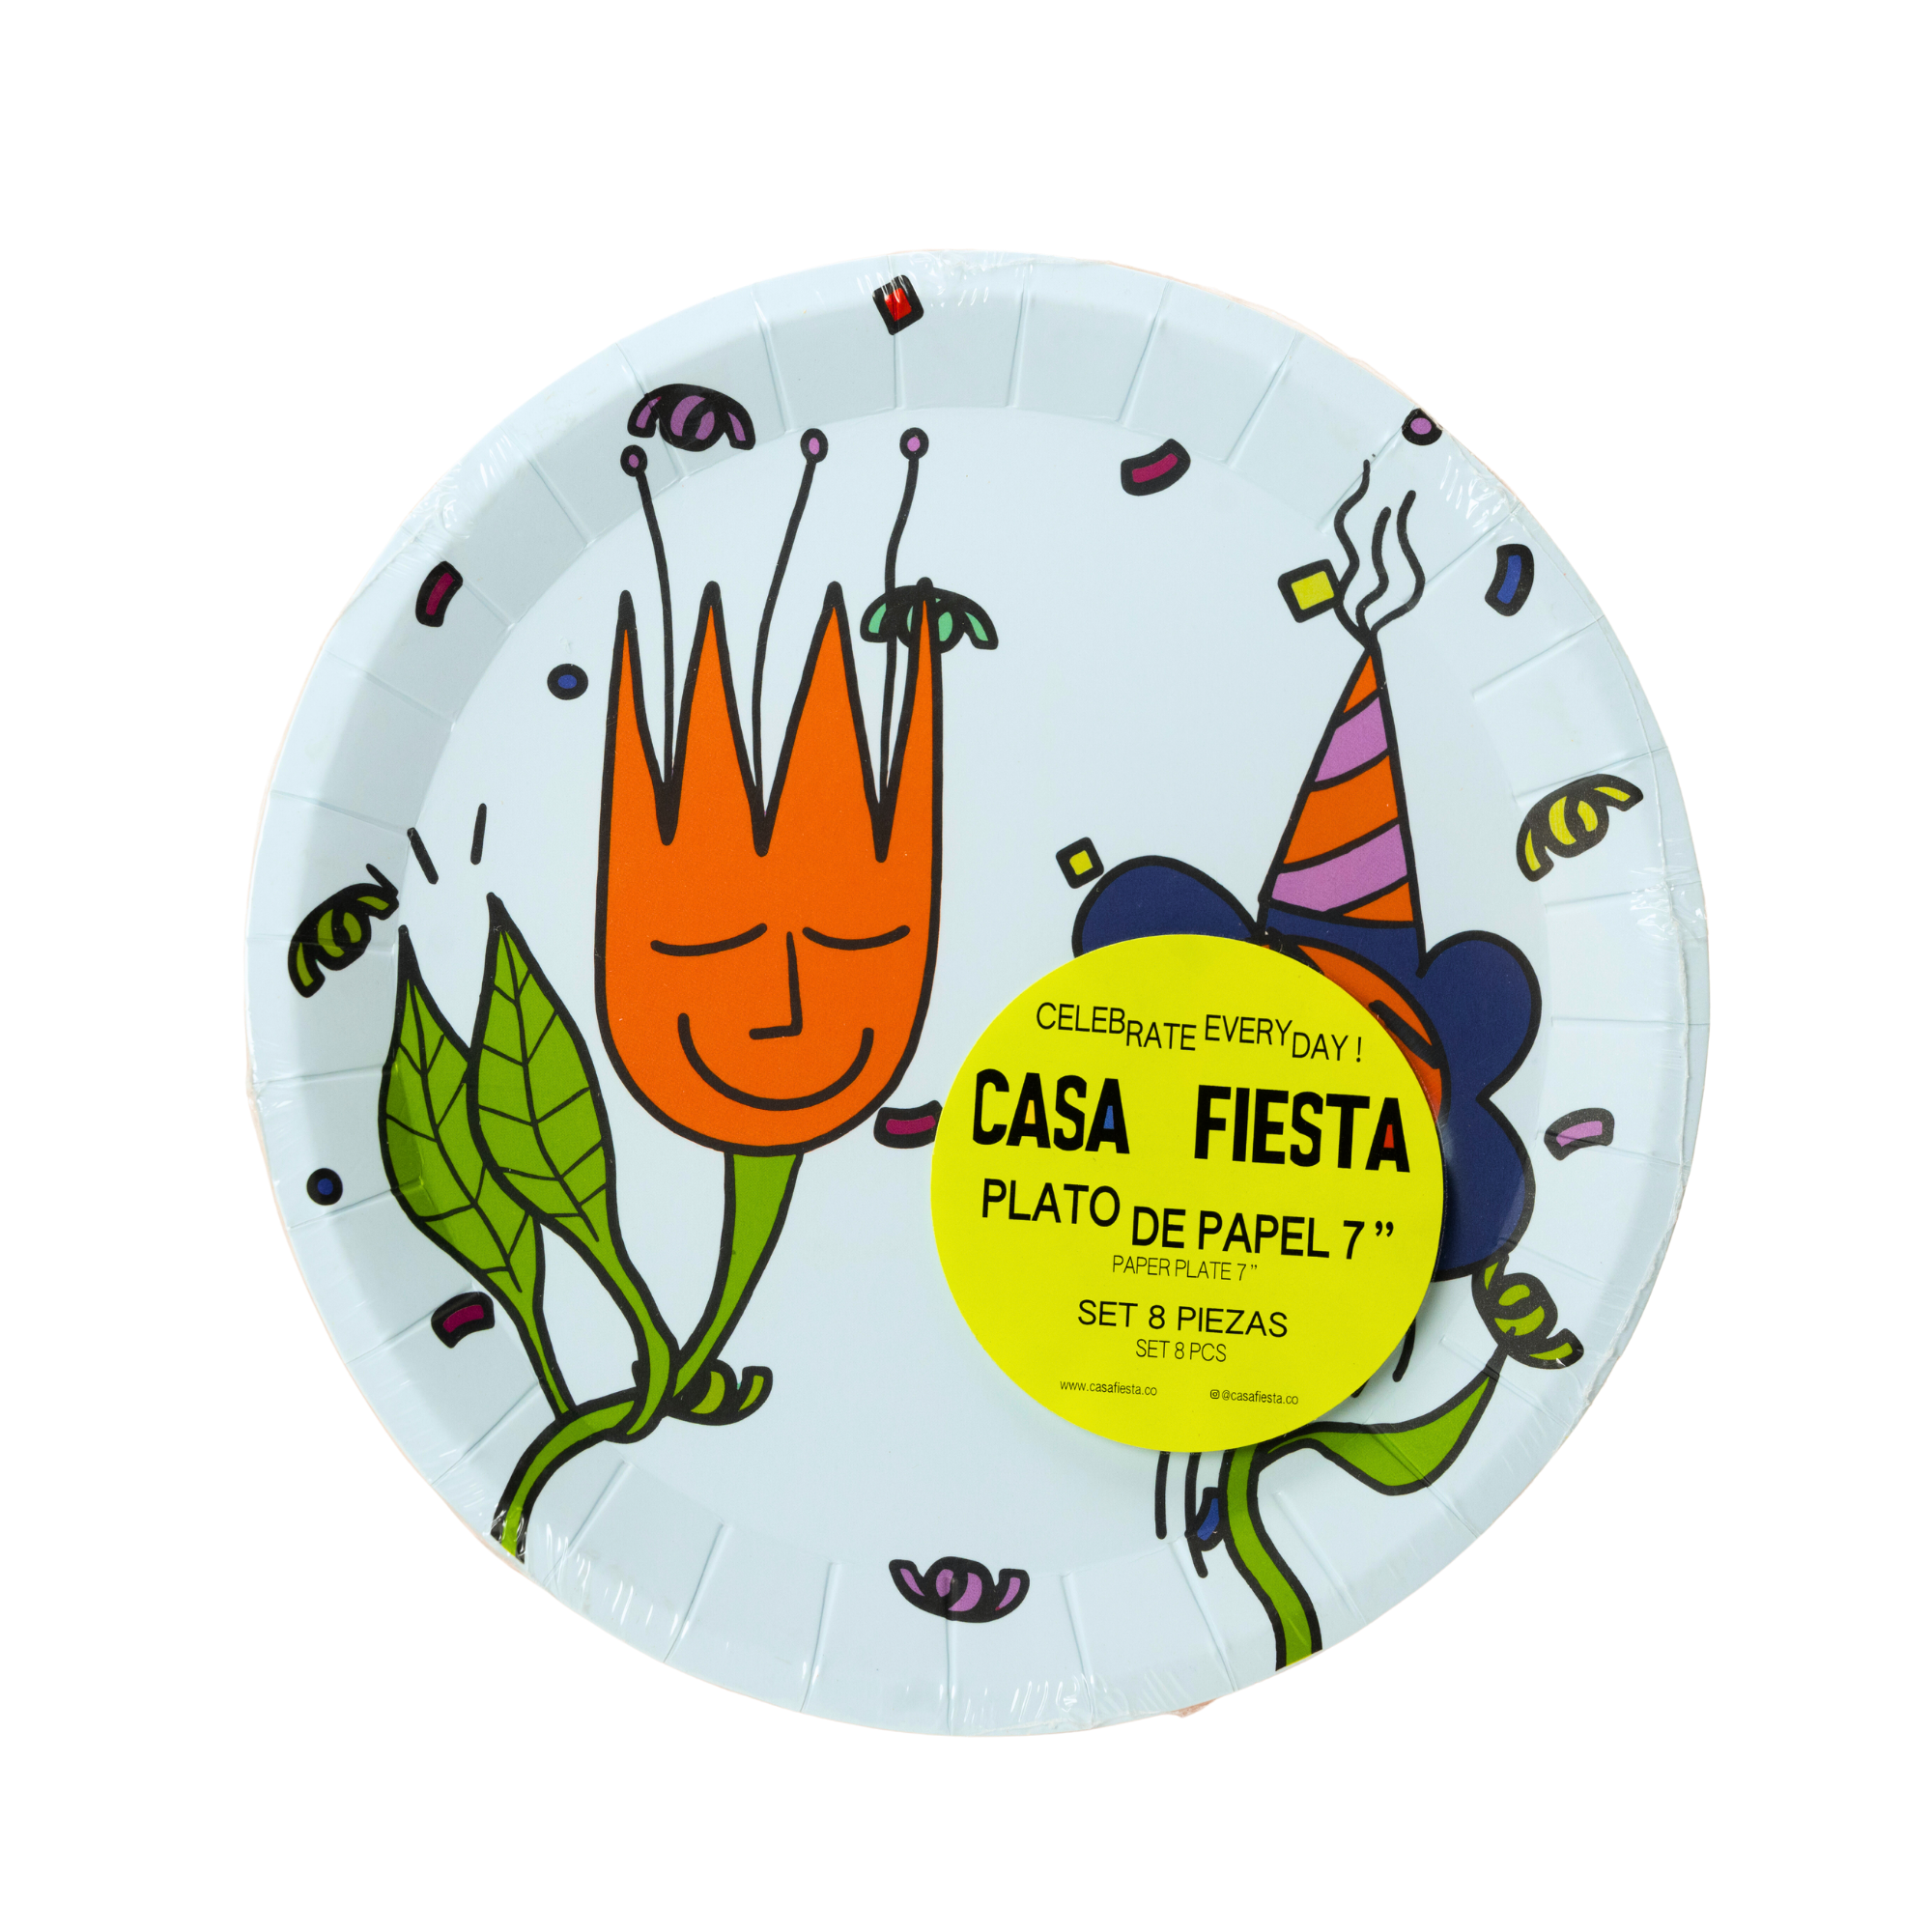 Cake Toppers Animaux de la Ferme - Recyclable pour l'anniversaire de votre  enfant - Annikids